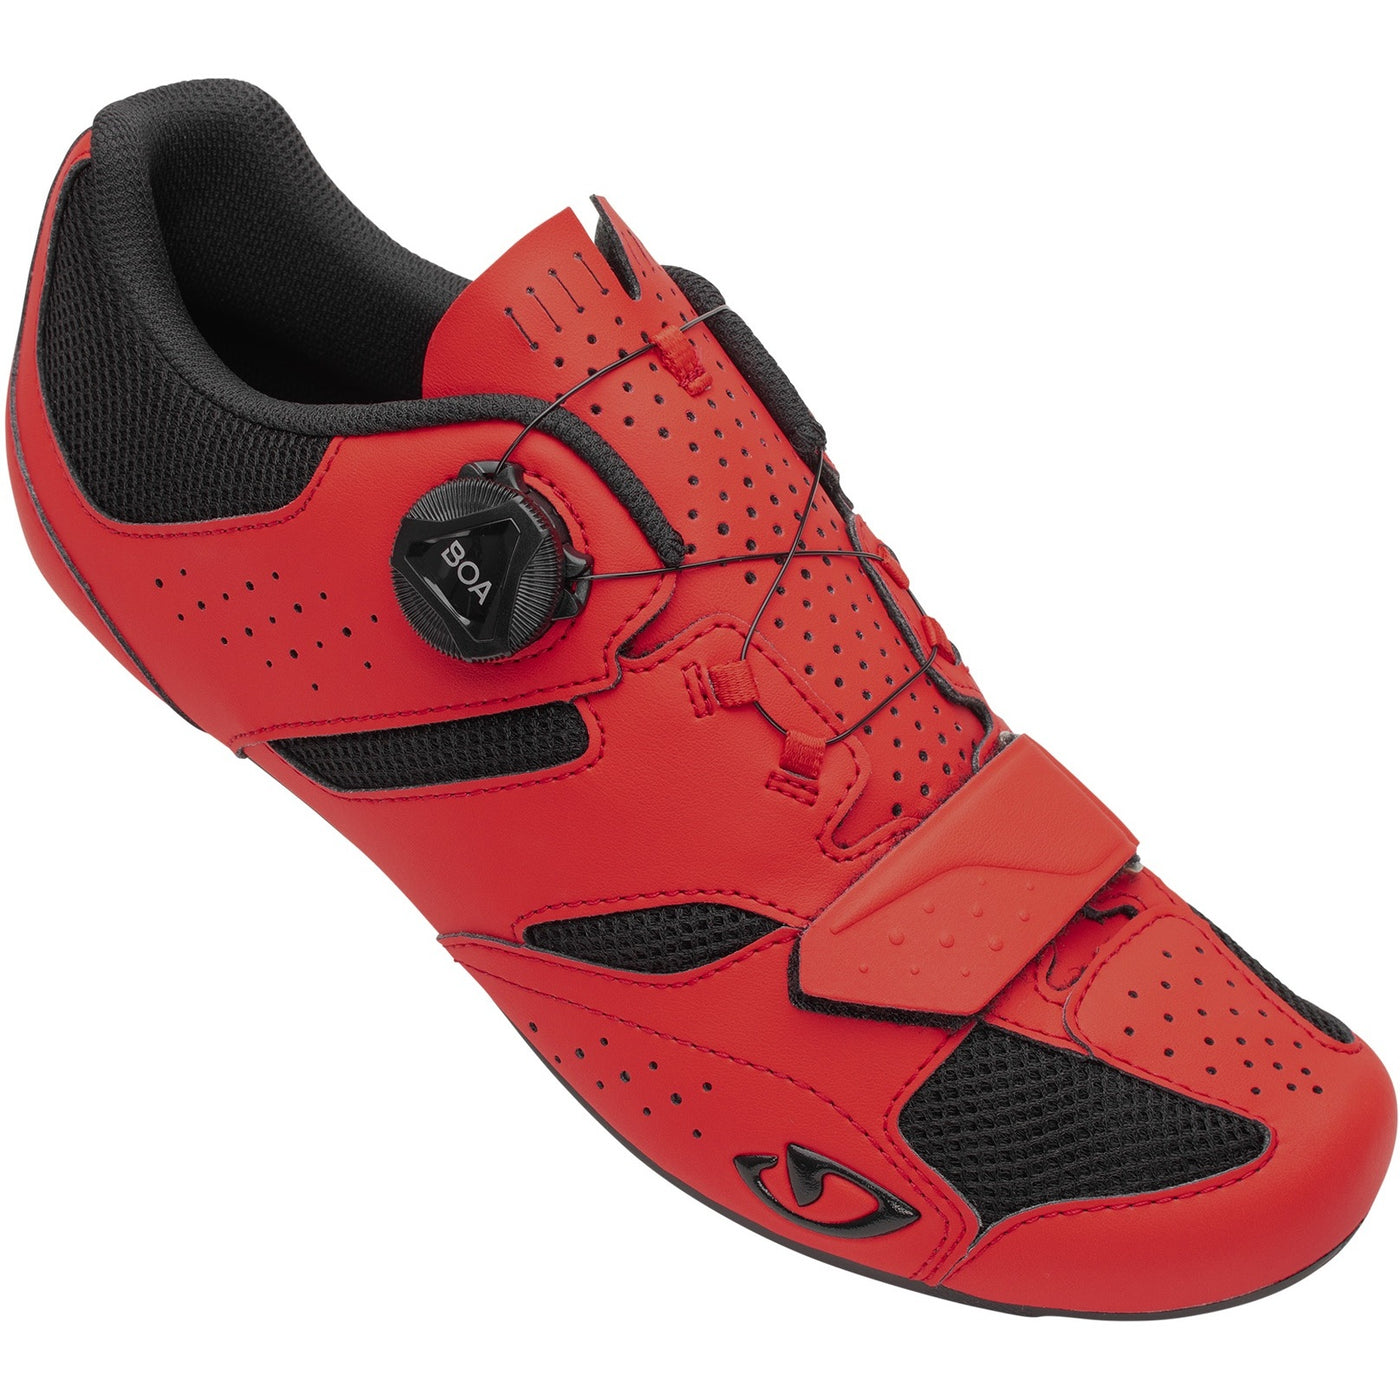 Giro Savix II Road Cycling Shoes (Bright Red)